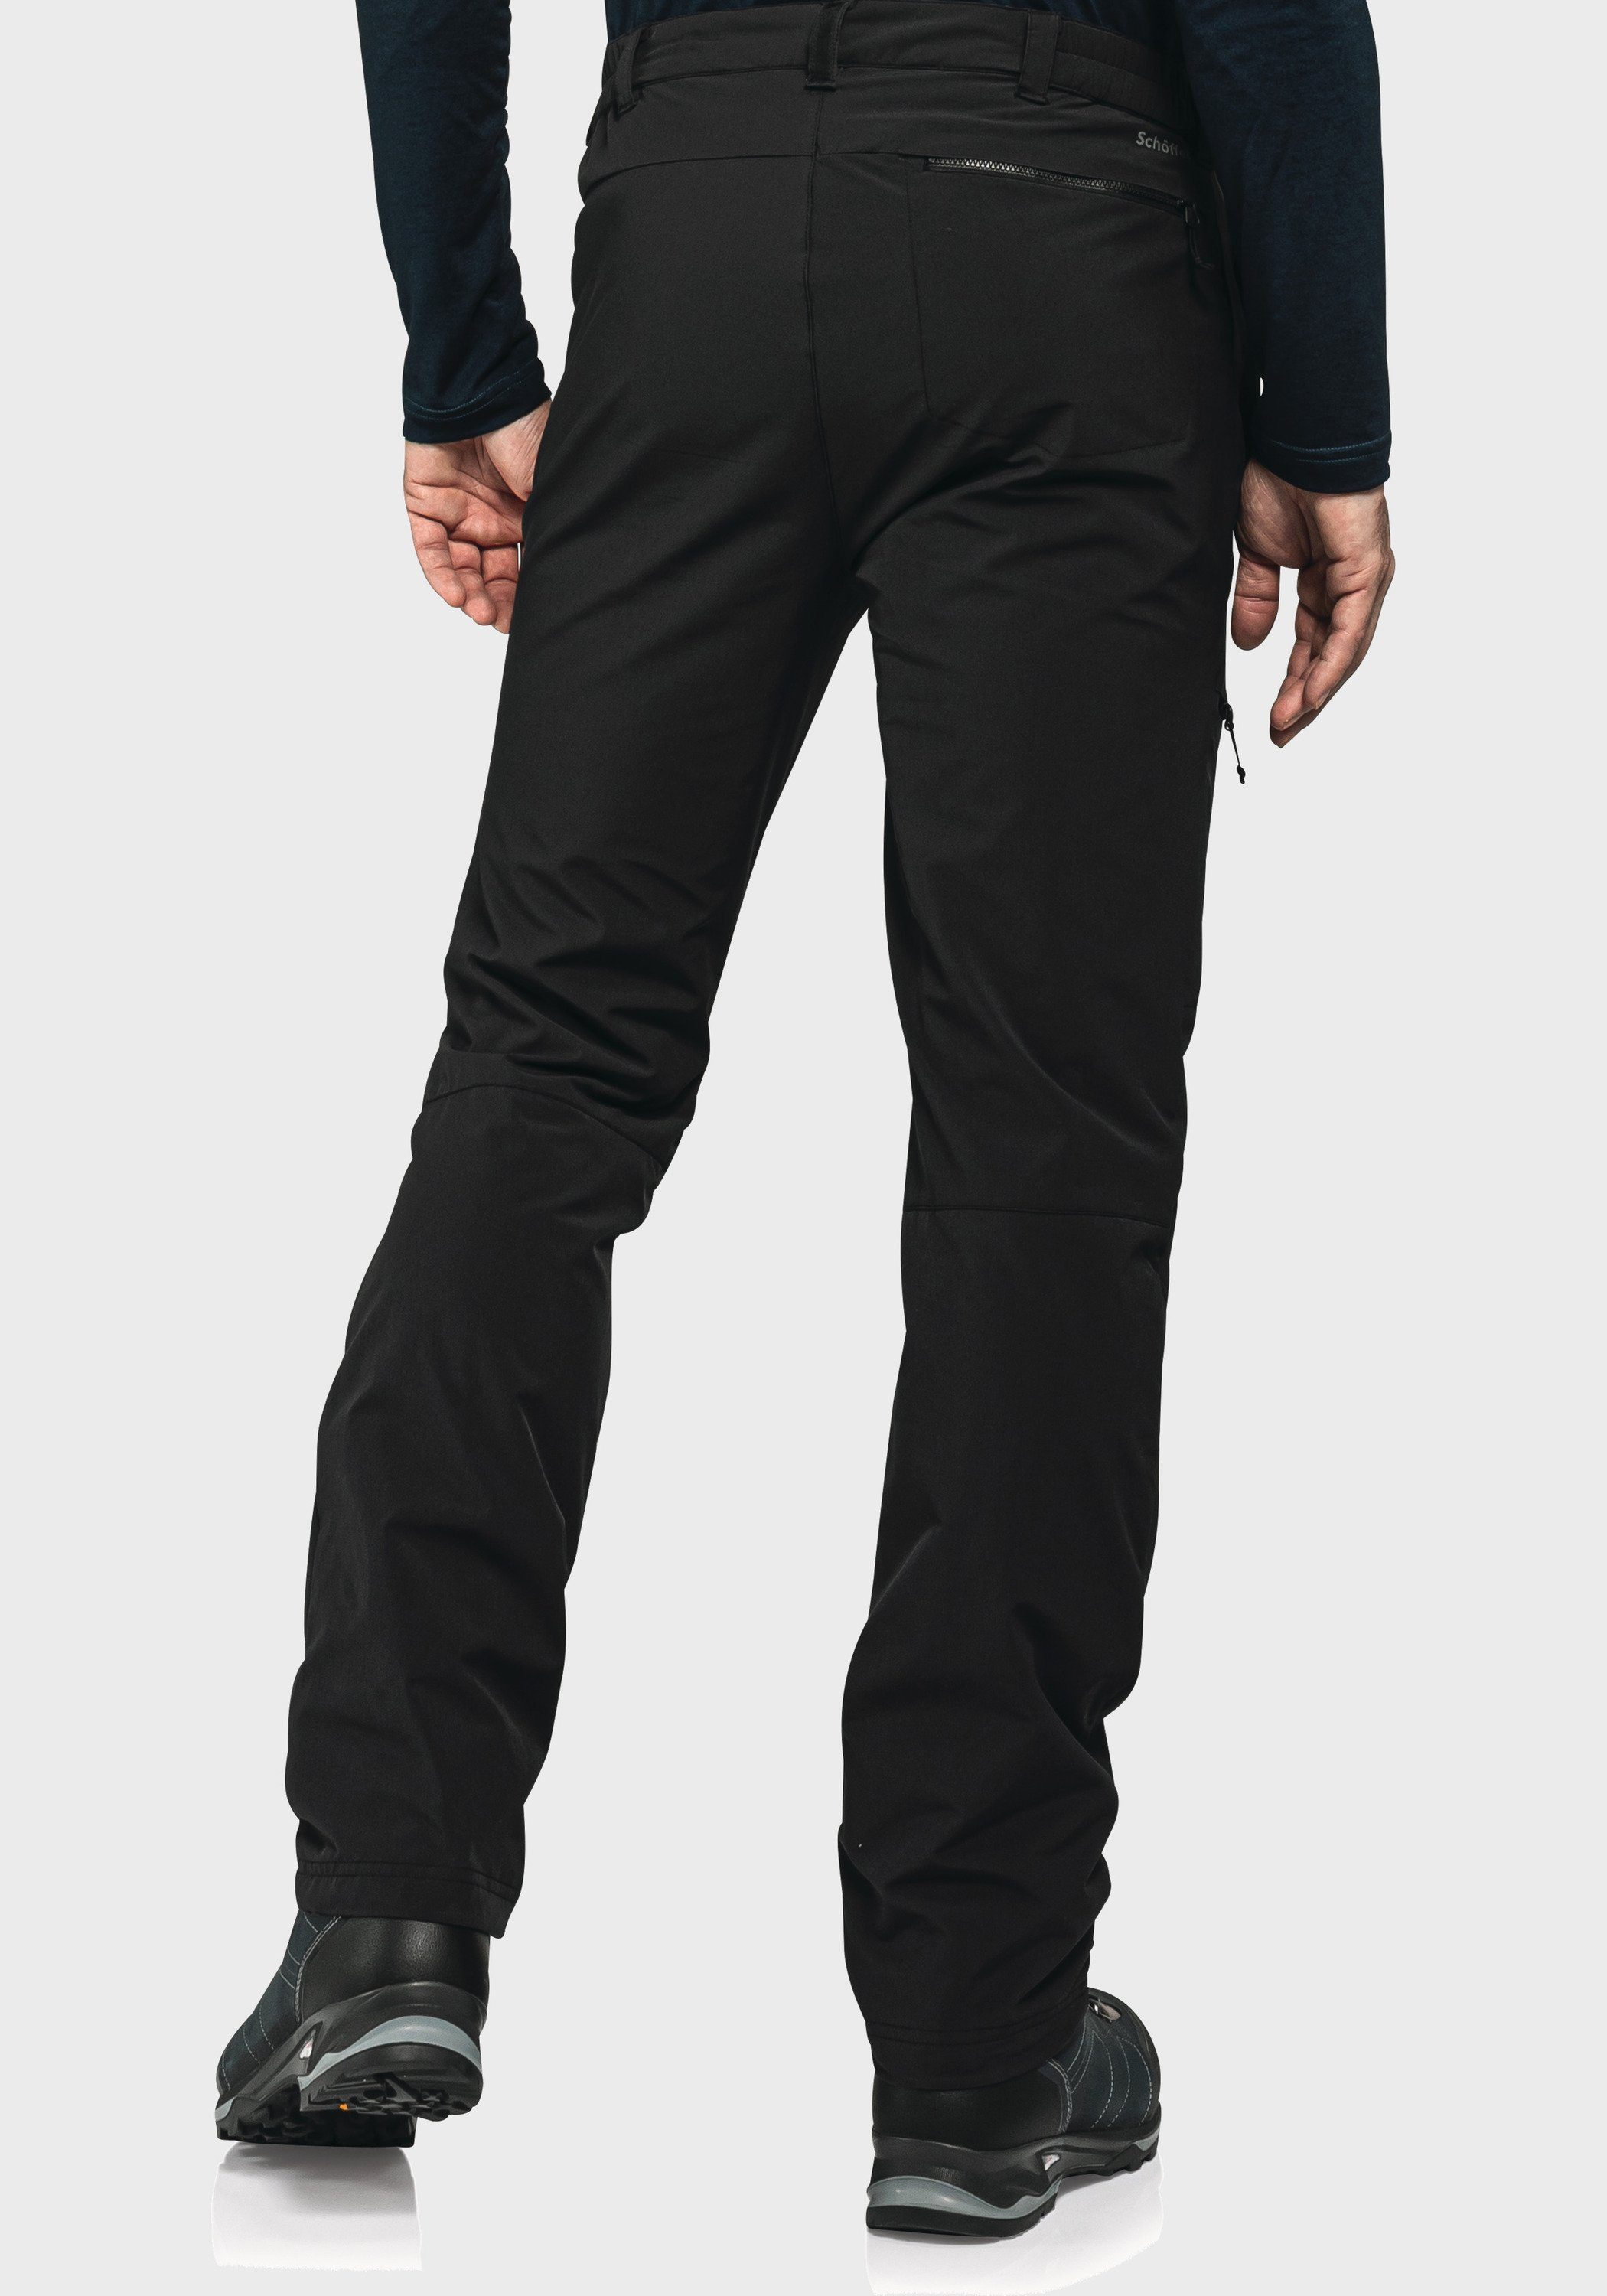 Koper1 schwarz Outdoorhose Warm Schöffel Pants M